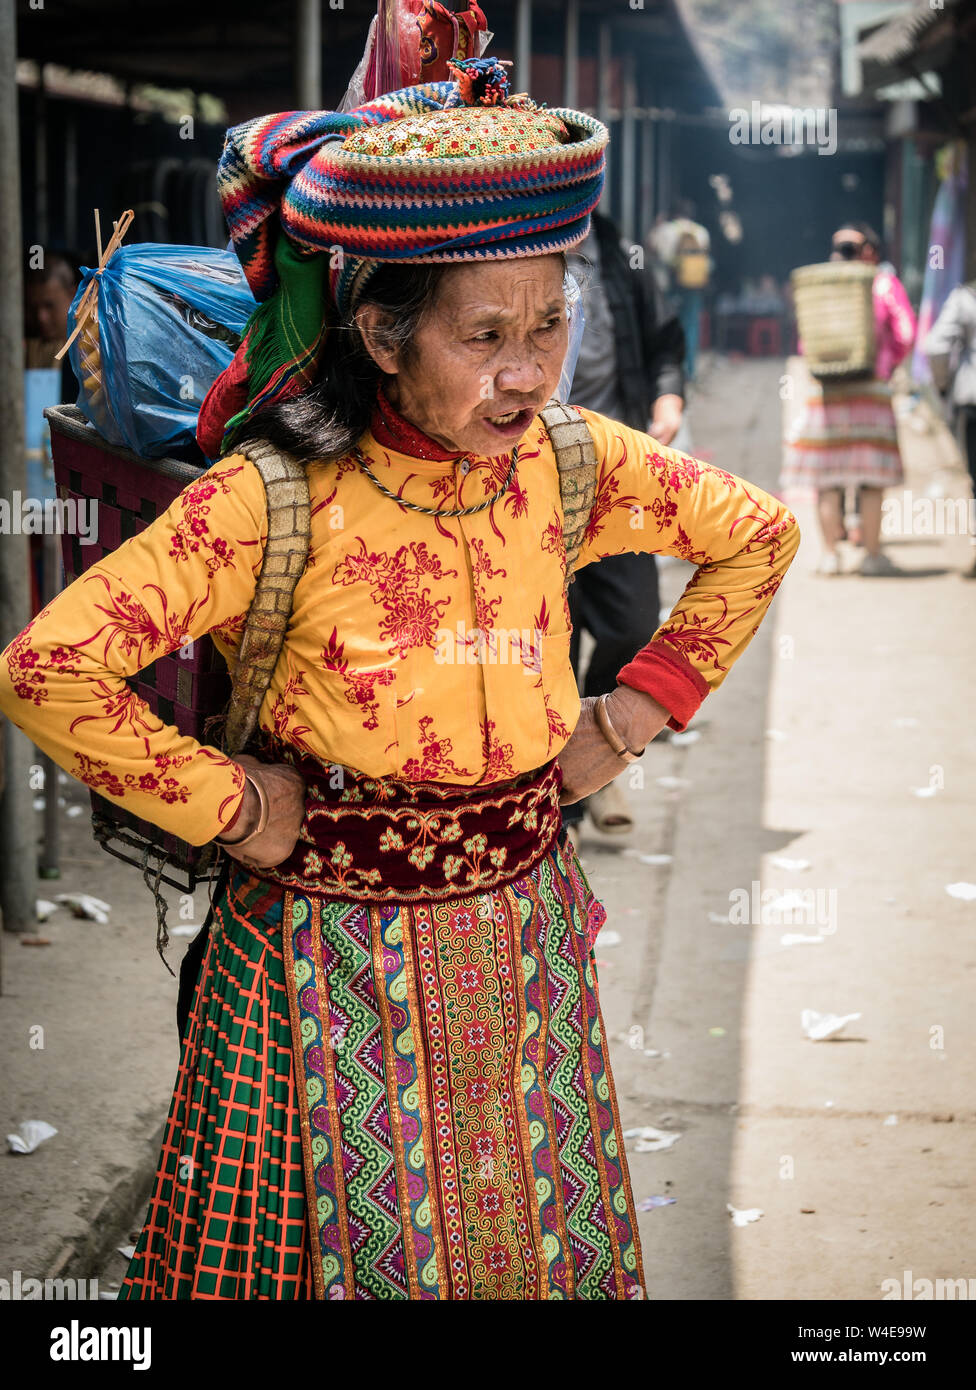 Dong Van, Vietnam - 05/26/2019: Alte vietnamesische Frau mit Korb auf dem Rücken in der traditionellen bunten Kleid der ethnischen Minderheit an Dong Van Sonntag Markt Stockfoto